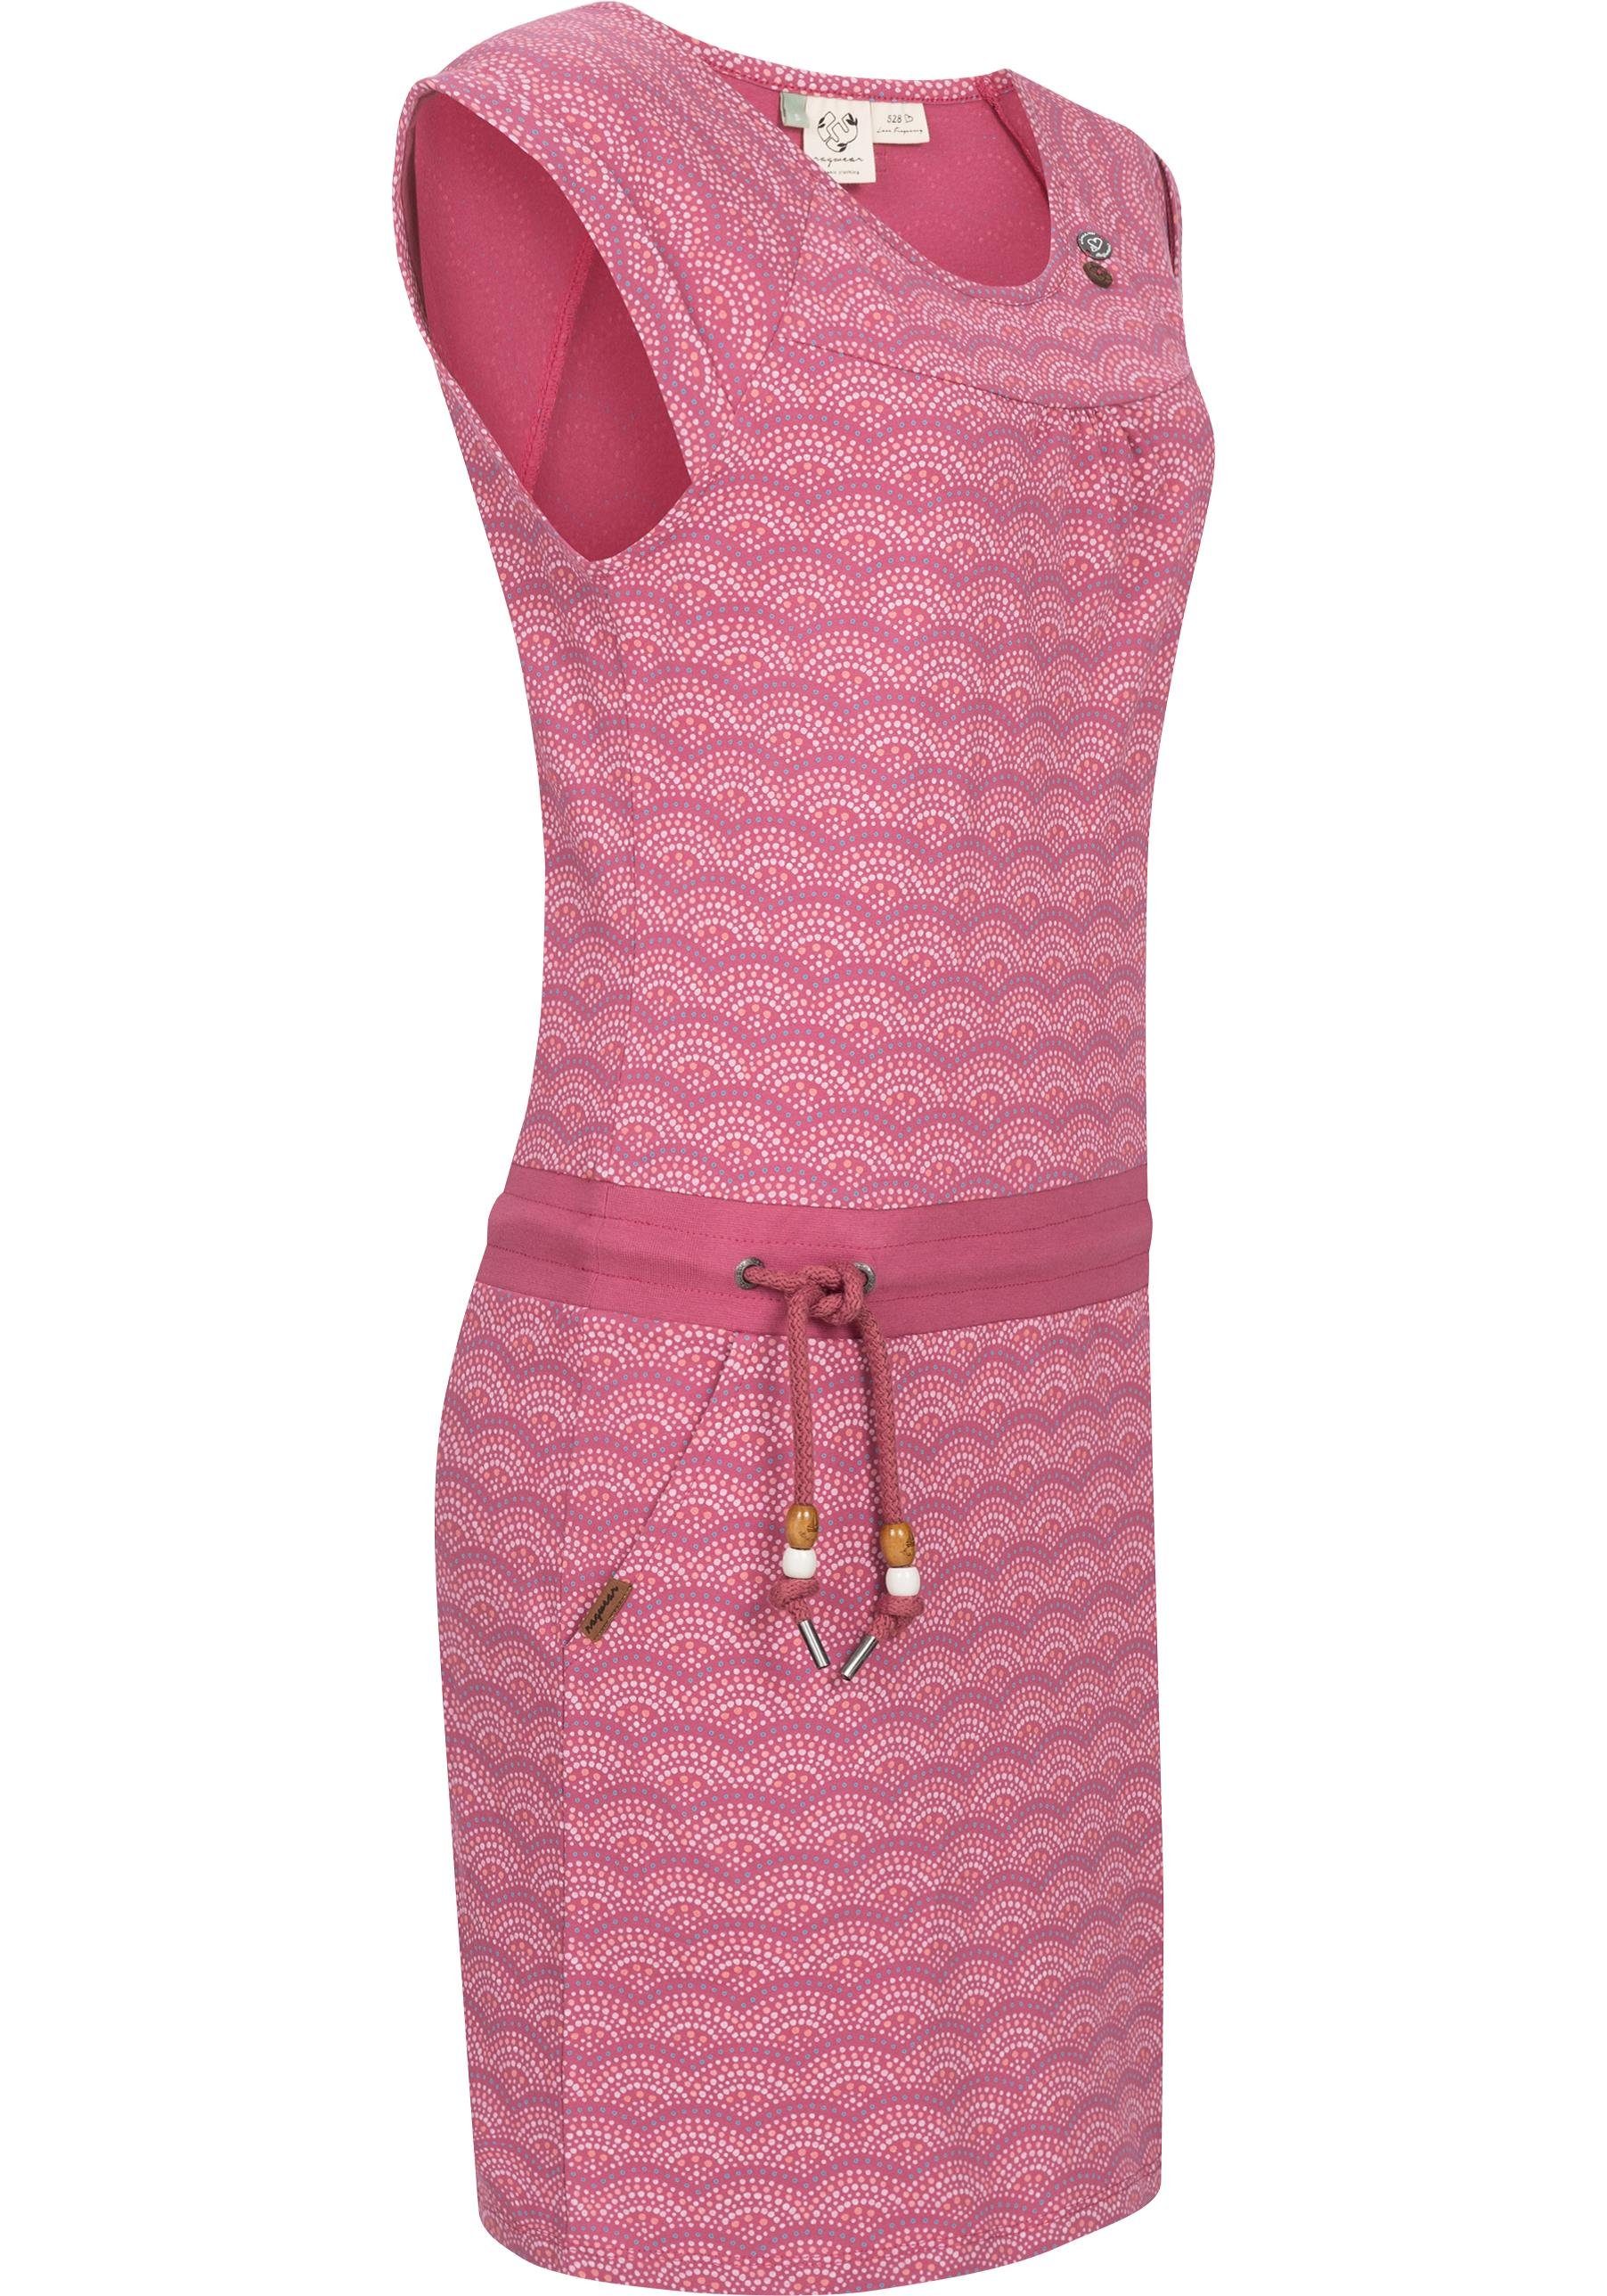 Ragwear Sommerkleid Penelope Print C geeignet mit Strand-Kleid leichtes Intl. ist Shirtkleid die Das Print, optimal für Jahreszeit stylischem warme